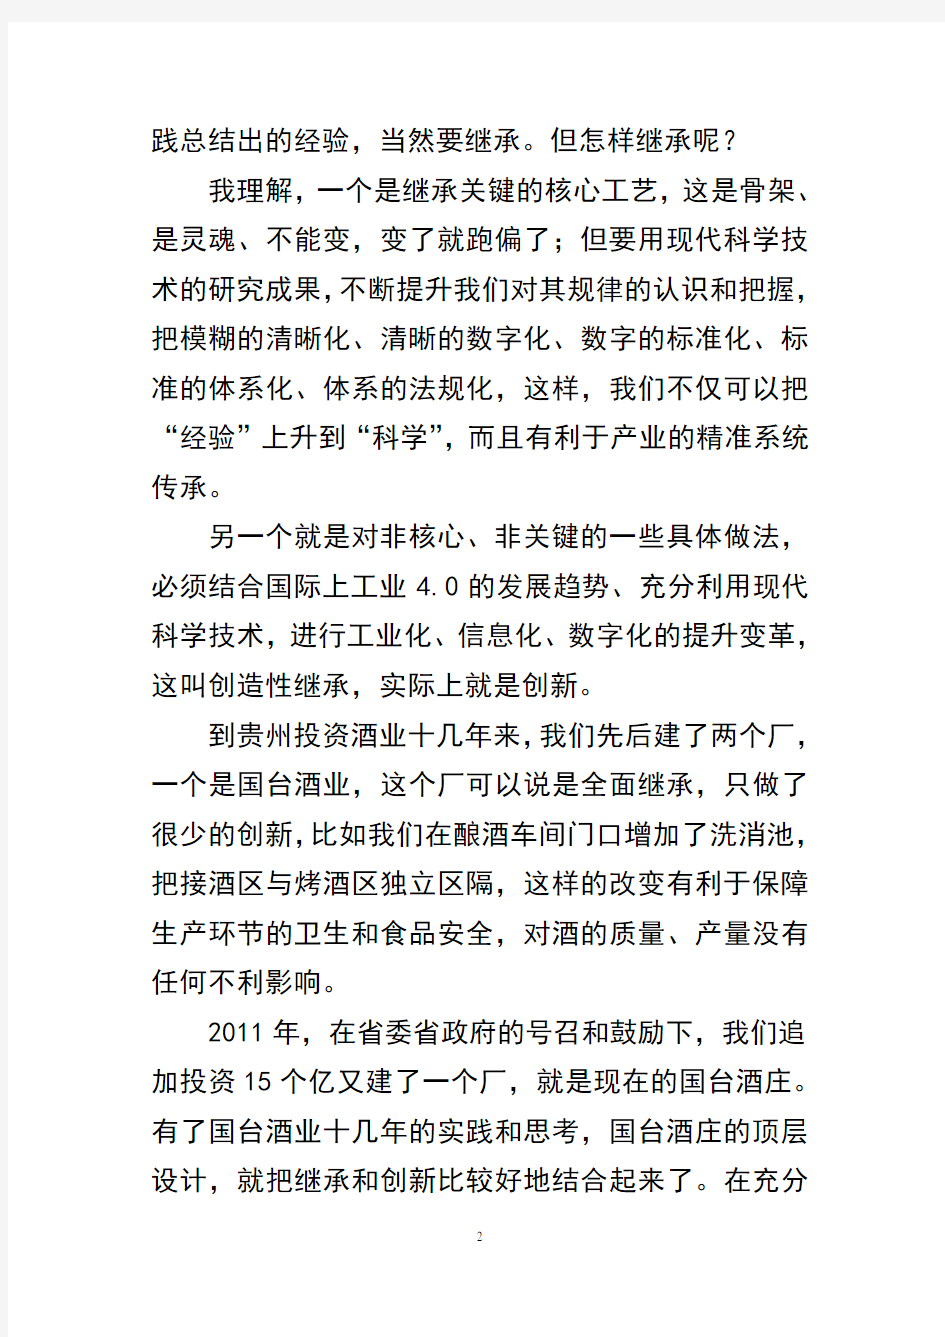 中国白酒发展的战略思考及国台实践(报贵州日报2015年9月29日)